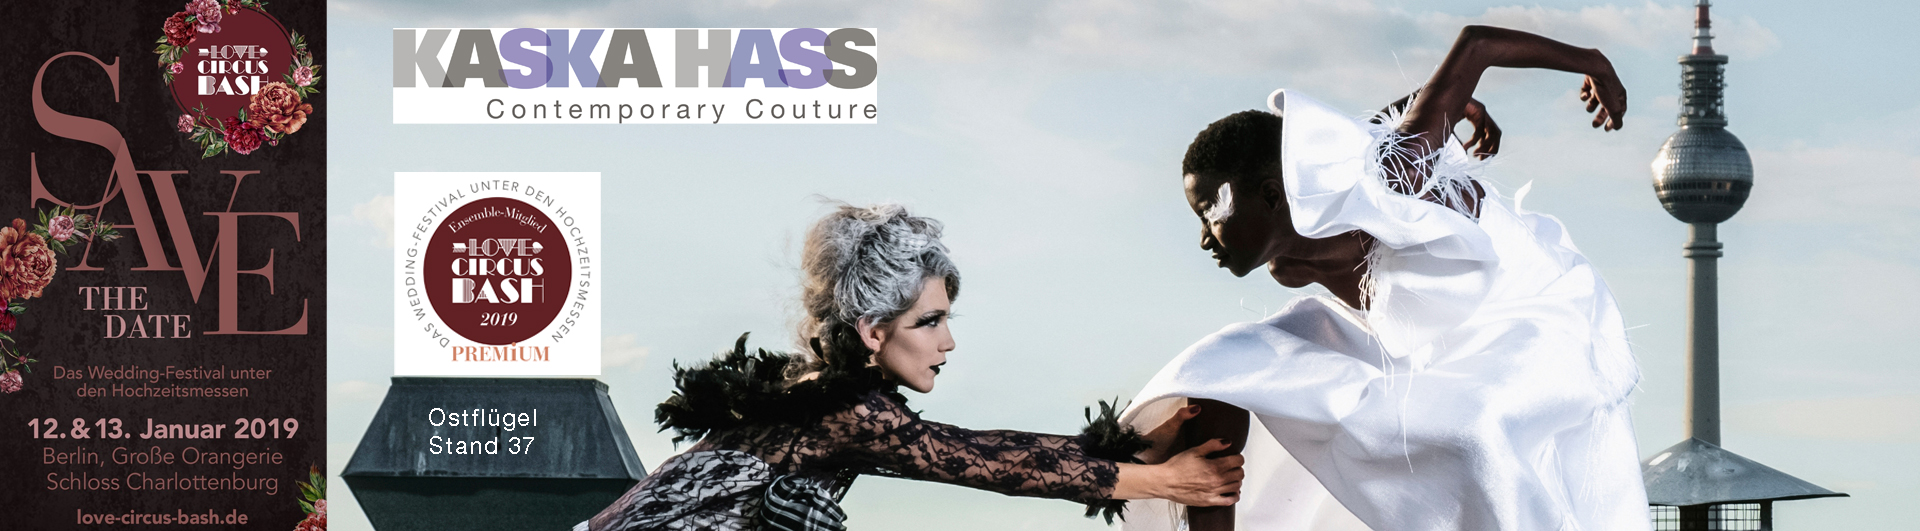 Kaska Hass Contemporary Couture zeigt ihre Wedding Couture auf der coolsten Hochzeitsmesse – Love Circus bash, das Wedding Festival unter den Hochzeitsmessen